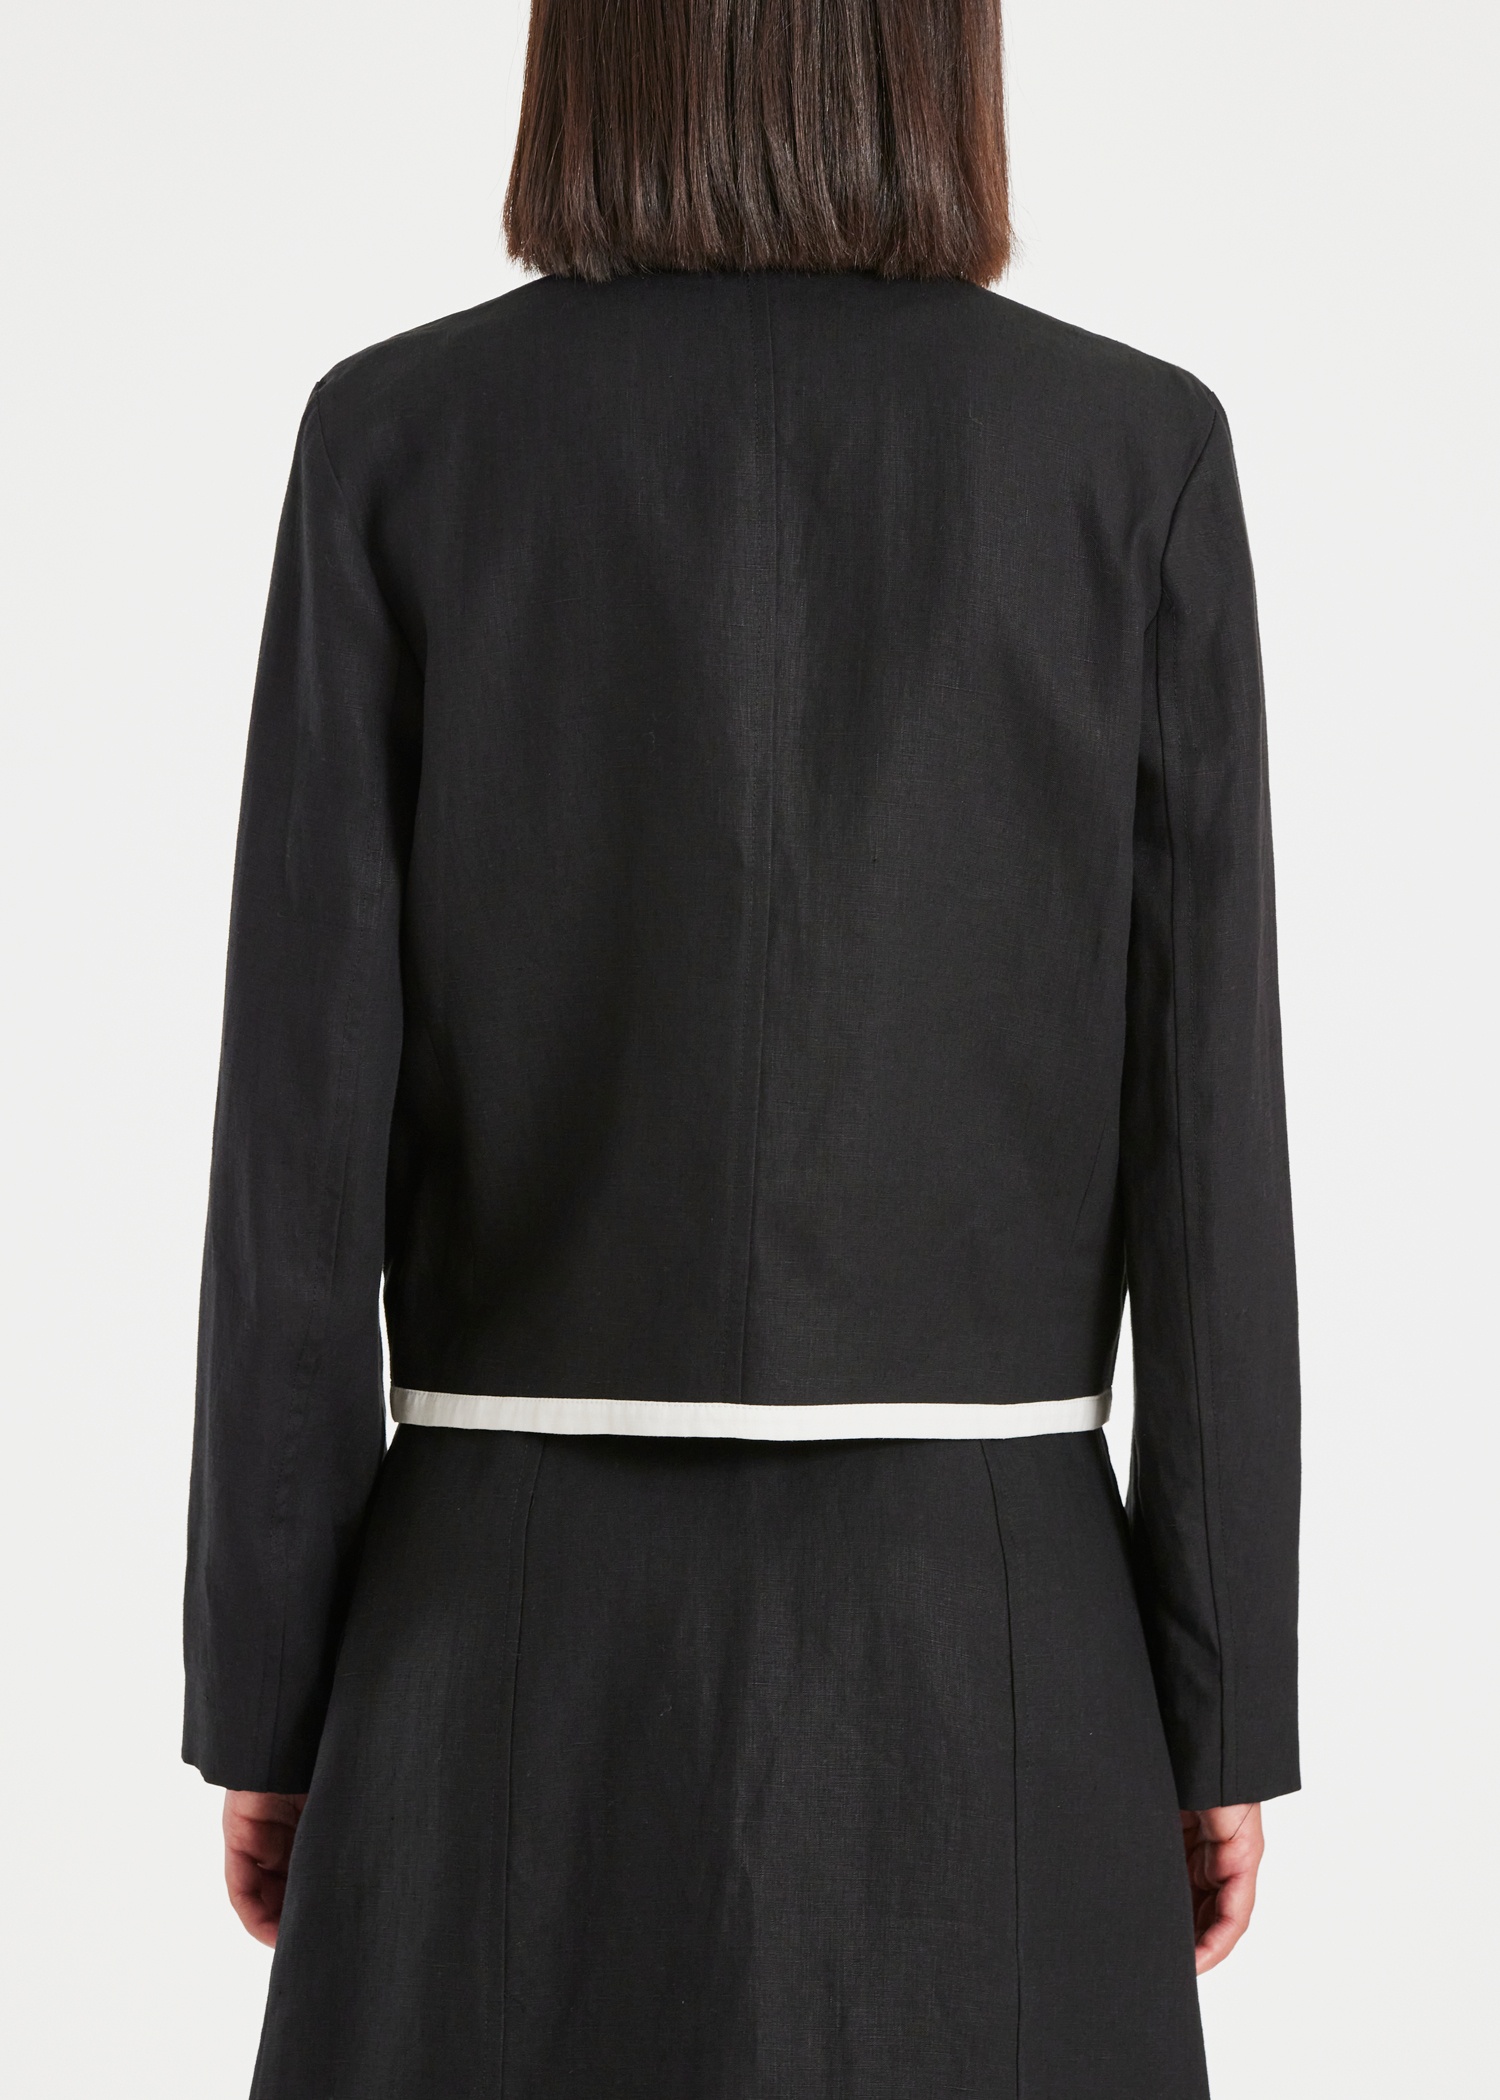 Women's Black Linen Zip Jacket - 7